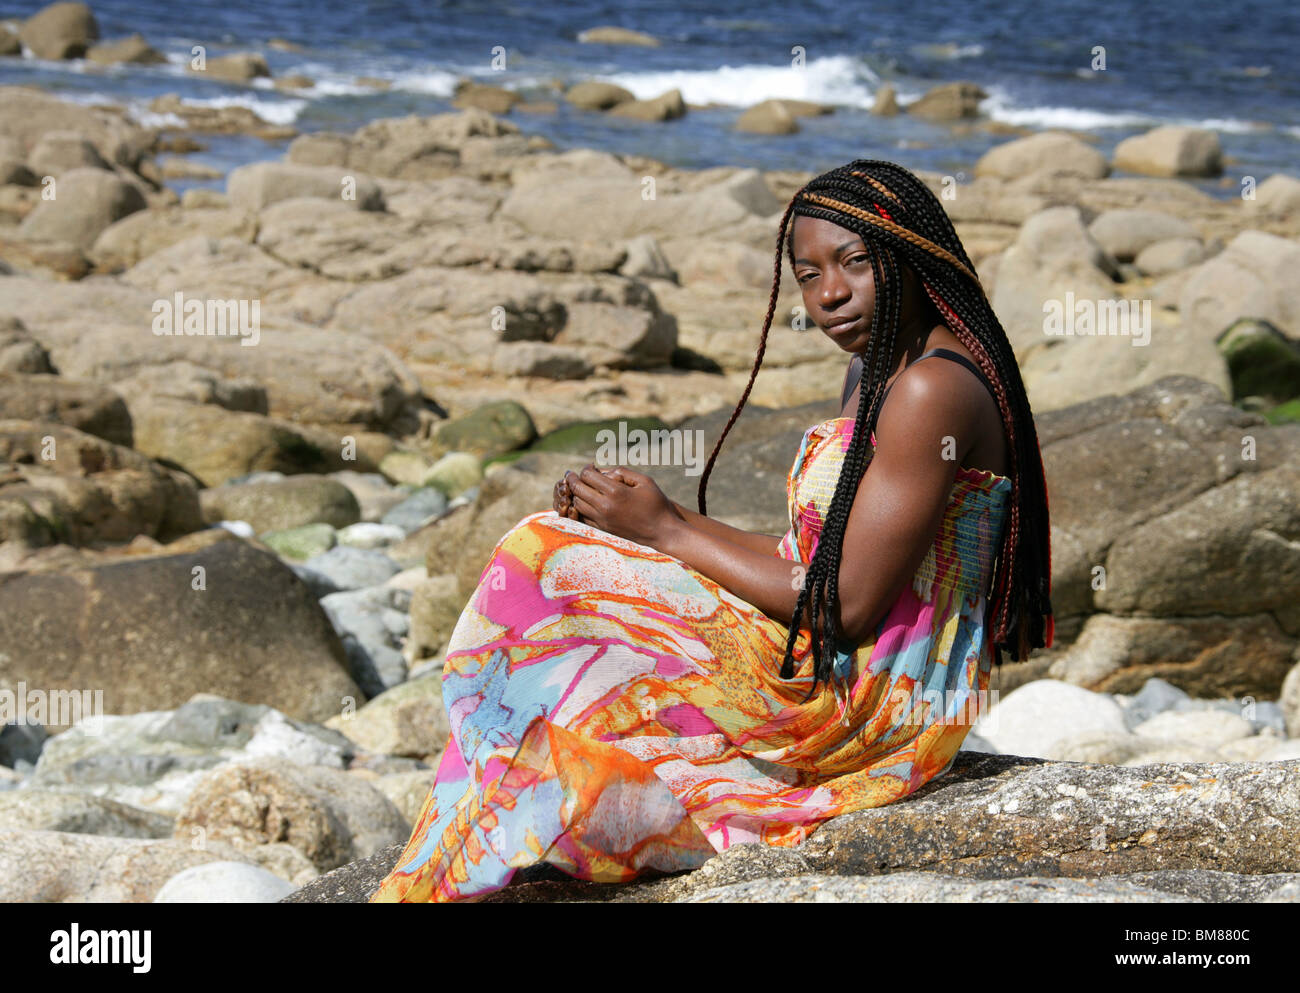 Femme africaine avec des dreadlocks, et portant une robe colorée, portant sur les roches par la mer. Banque D'Images